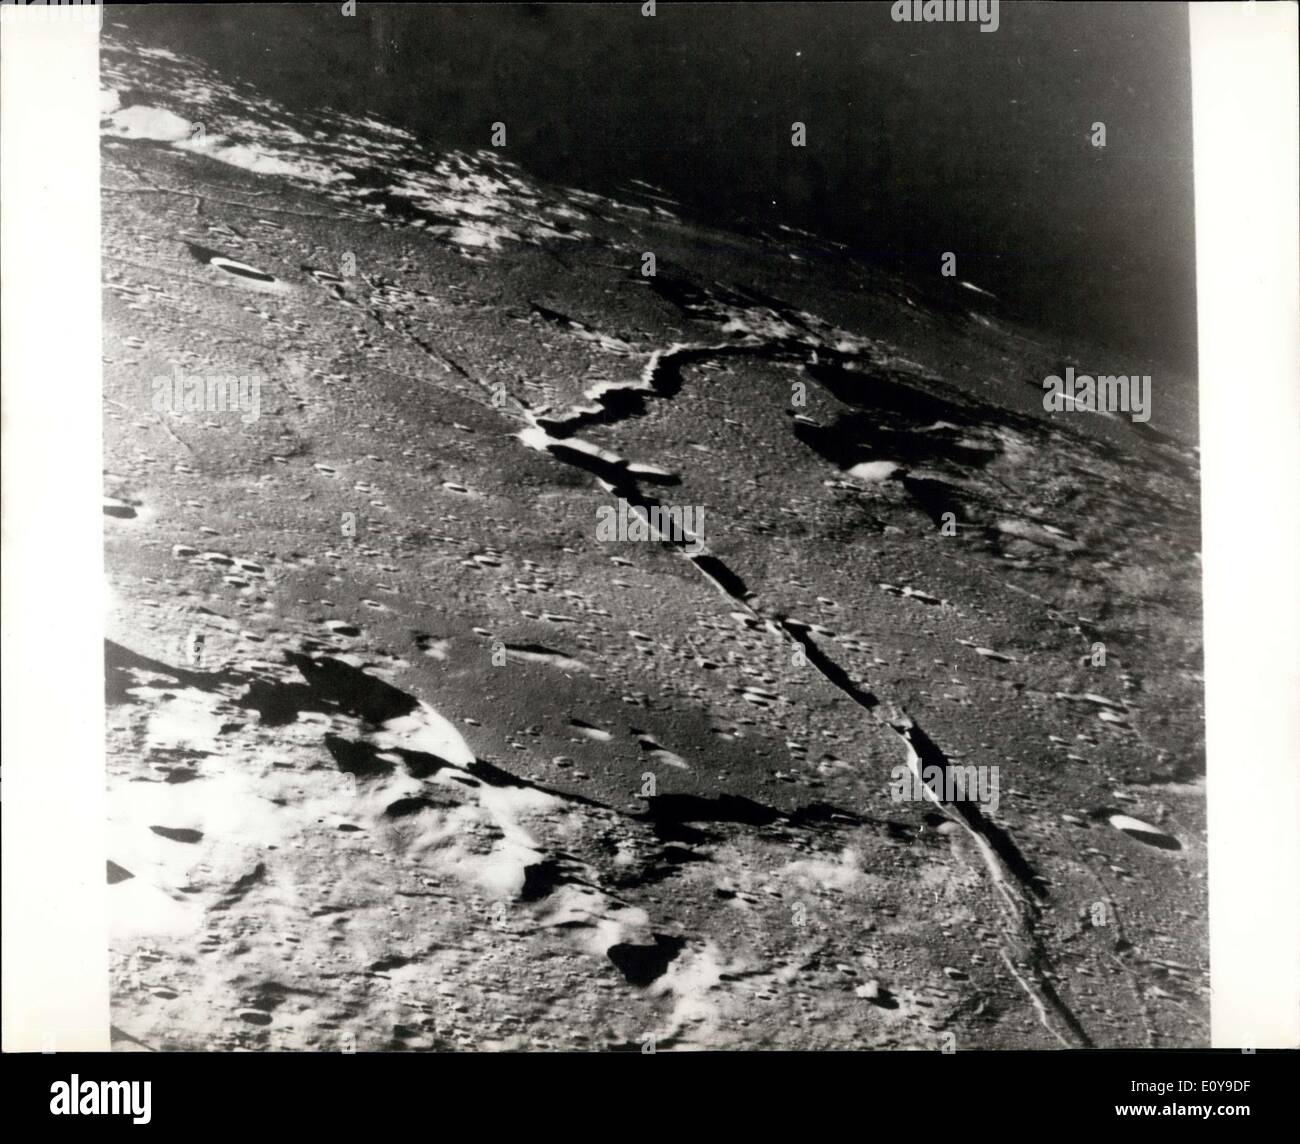 30 maggio 1969 - La Luna di terreno come si vede dall'Apollo 10 astronauti questo Apollo 10 obliqua vista telefono è centrata sul cratere Hyginus vicino a nord - est di margine di Baia centrale (fermo immagine con sky in alto). Il cratere si trova a circa dieci chilometri (6 1/2 statua miglia) di diametro. Dal cratere del prominente Hyginus Rille si estende a est - Sud-est verso la telecamera e il nord - ovest verso il mare di vapori. Il Rille è di circa 3 chilometri ( 2 statua miglia) ampia e più di venti chilometri (130 statua miglia) di lunghezza Foto Stock